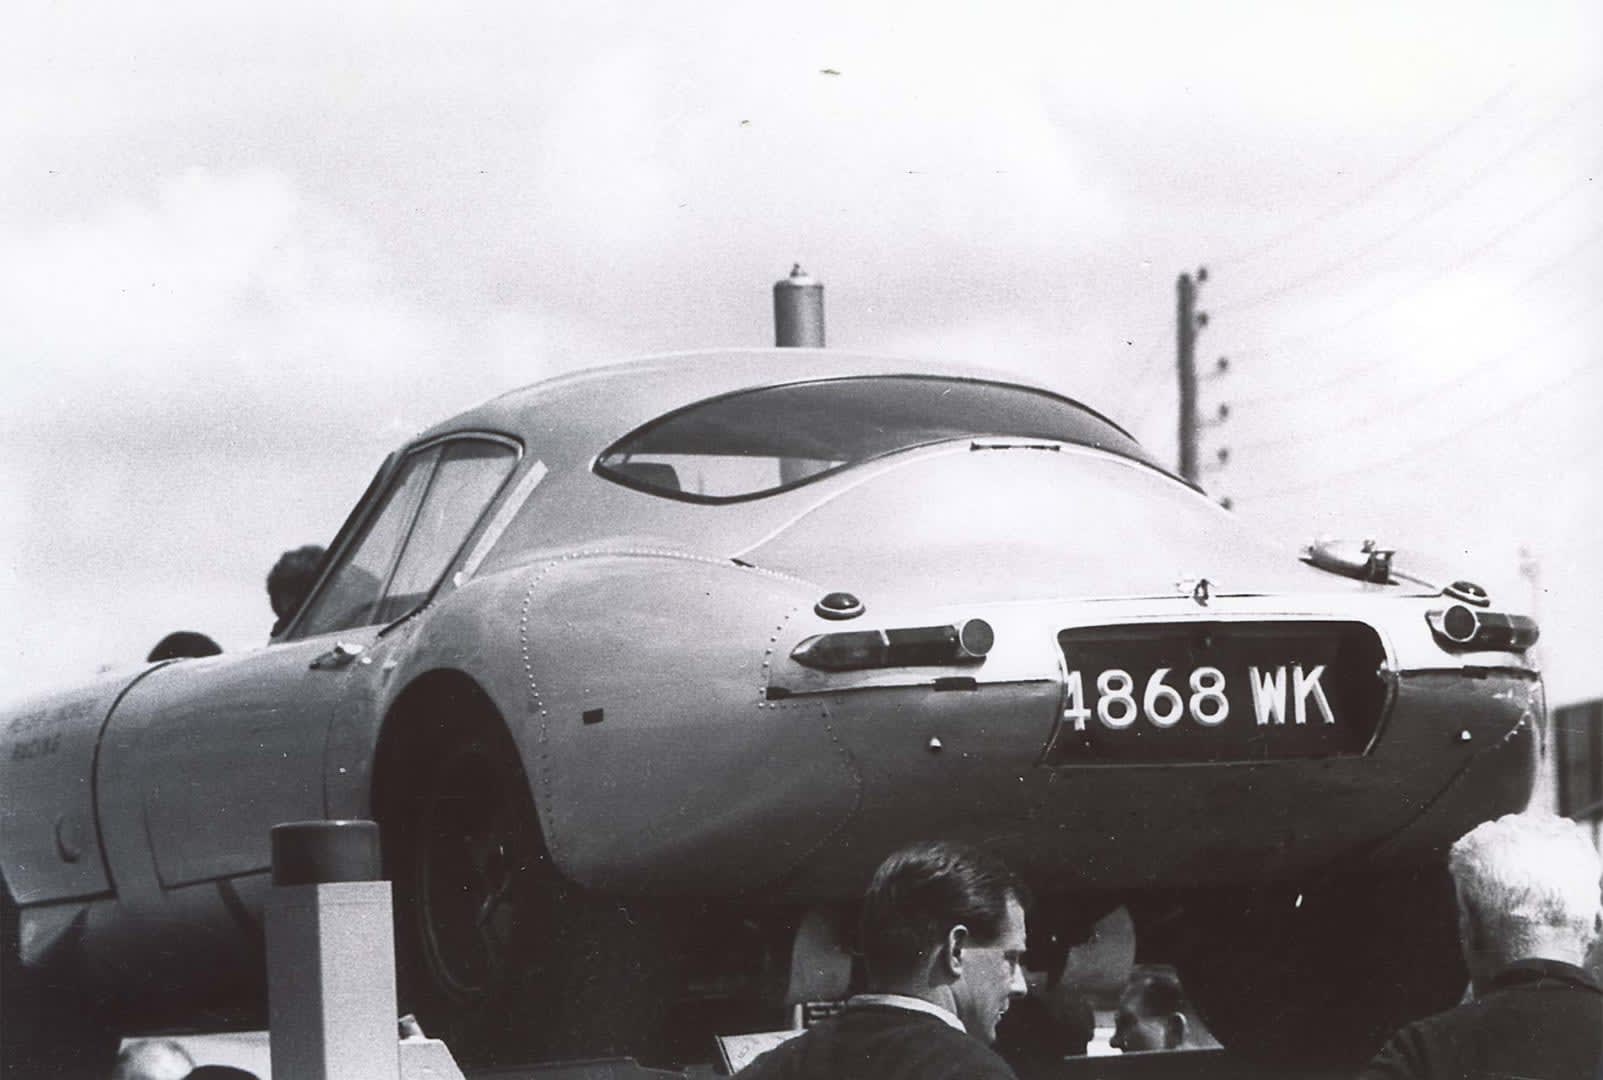 1963 Jaguar E-Type 'Low Drag' Coupé - collectorscarworld